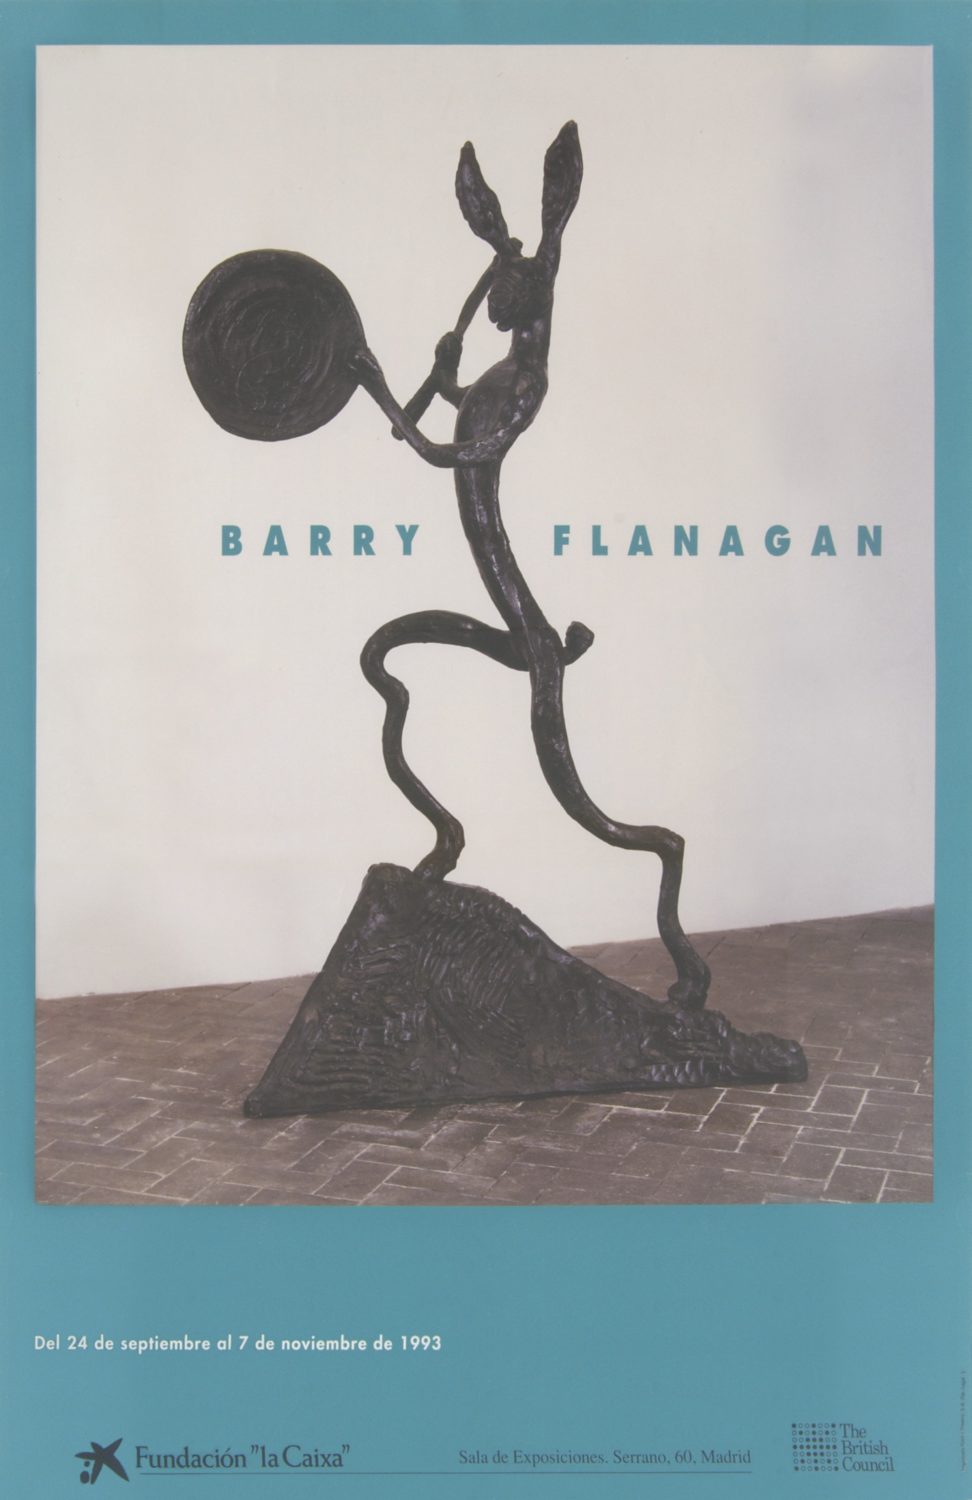 ‘Barry Flanagan’, Fundación la Caixa, Madrid, Spain (1993)